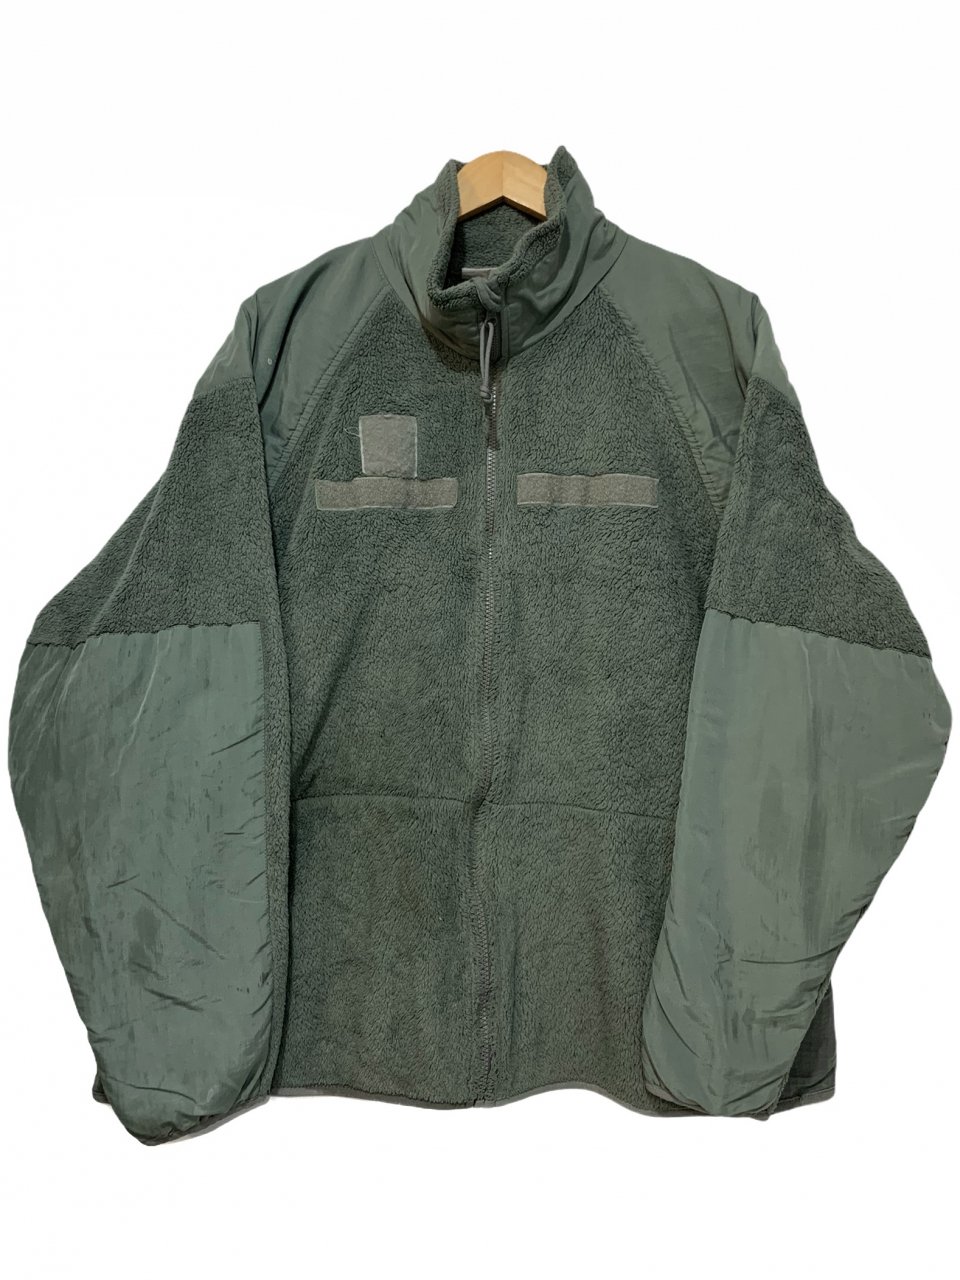 08年製 US ARMY ECWCS GEN3 LEVEL3 Fleece Jacket (FOLIAGE) XLARGE